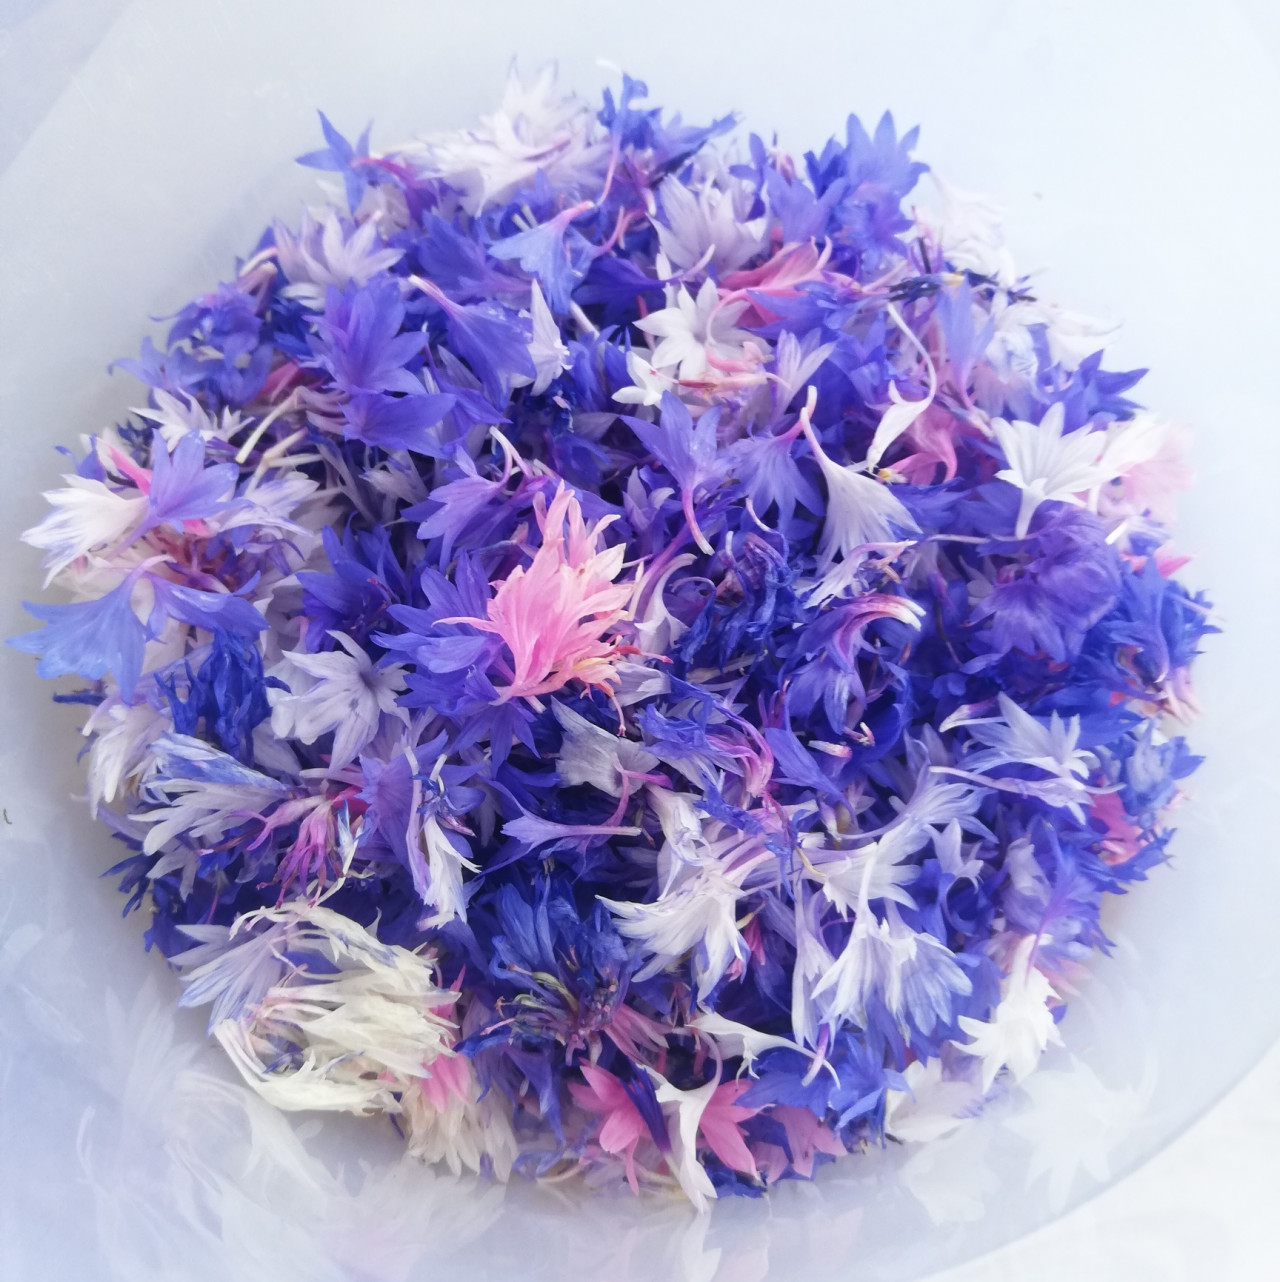 A búzavirág színei káprázatosak! Kivételesen nem a konyhában, hanem a fürdőben lesz hasznunkra: bőrradír készül belőle